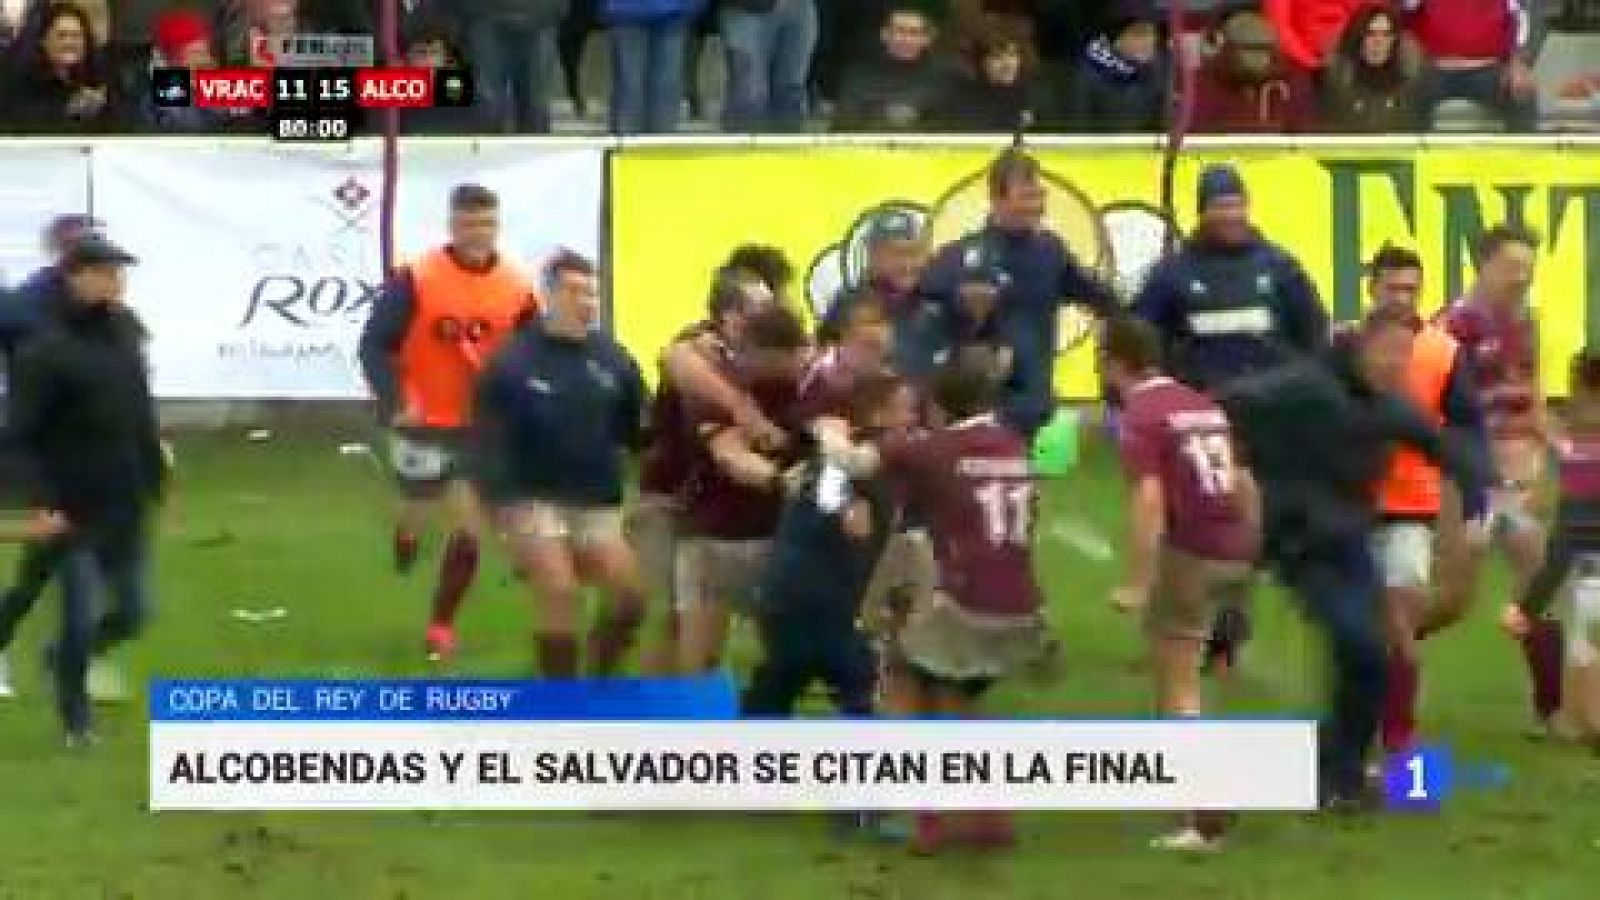 Alcobendas y El Salvador, clasificados para la final de Copa del Rey de rugby